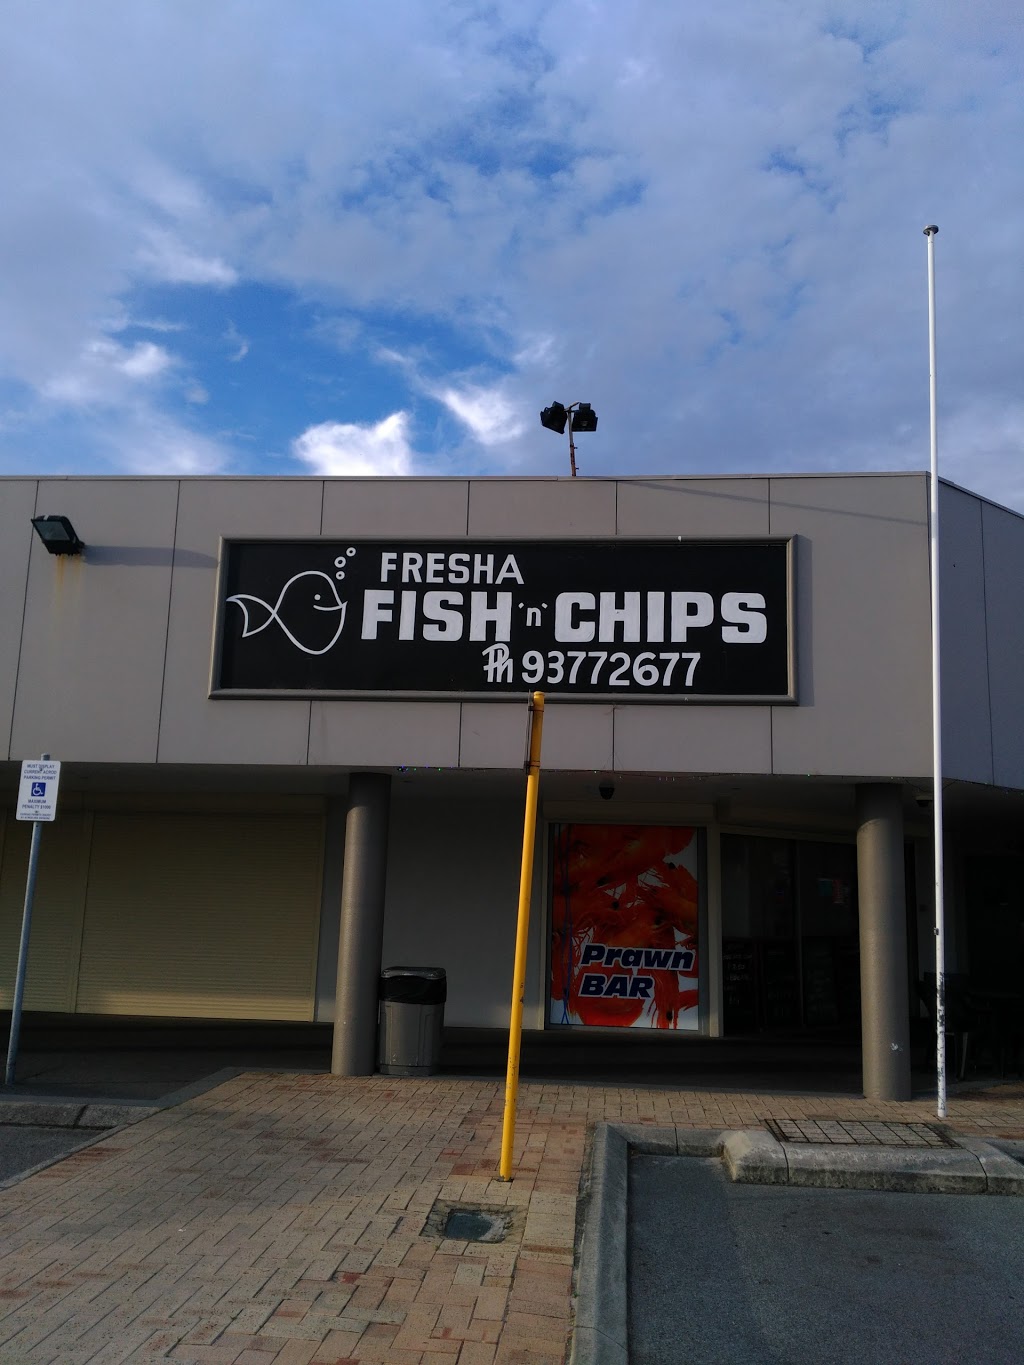 MCQ Fresh Supermarket | store | 4 Incana Pl, Morley WA 6062, Australia